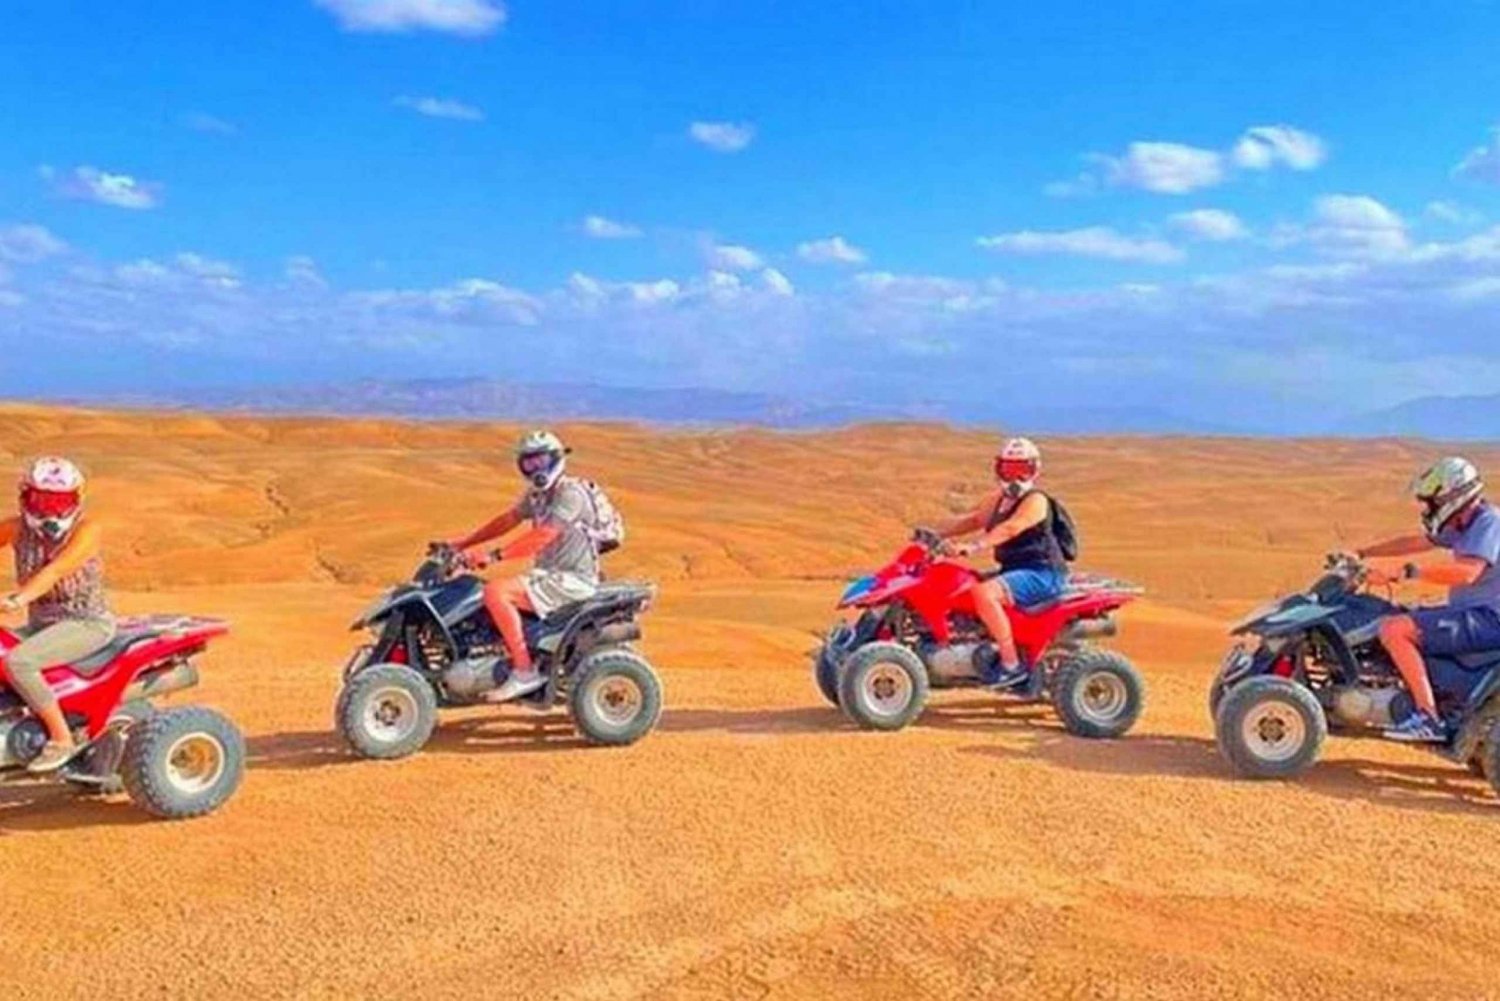 Marrakech: Agafay woestijn quad rijden met diner en show